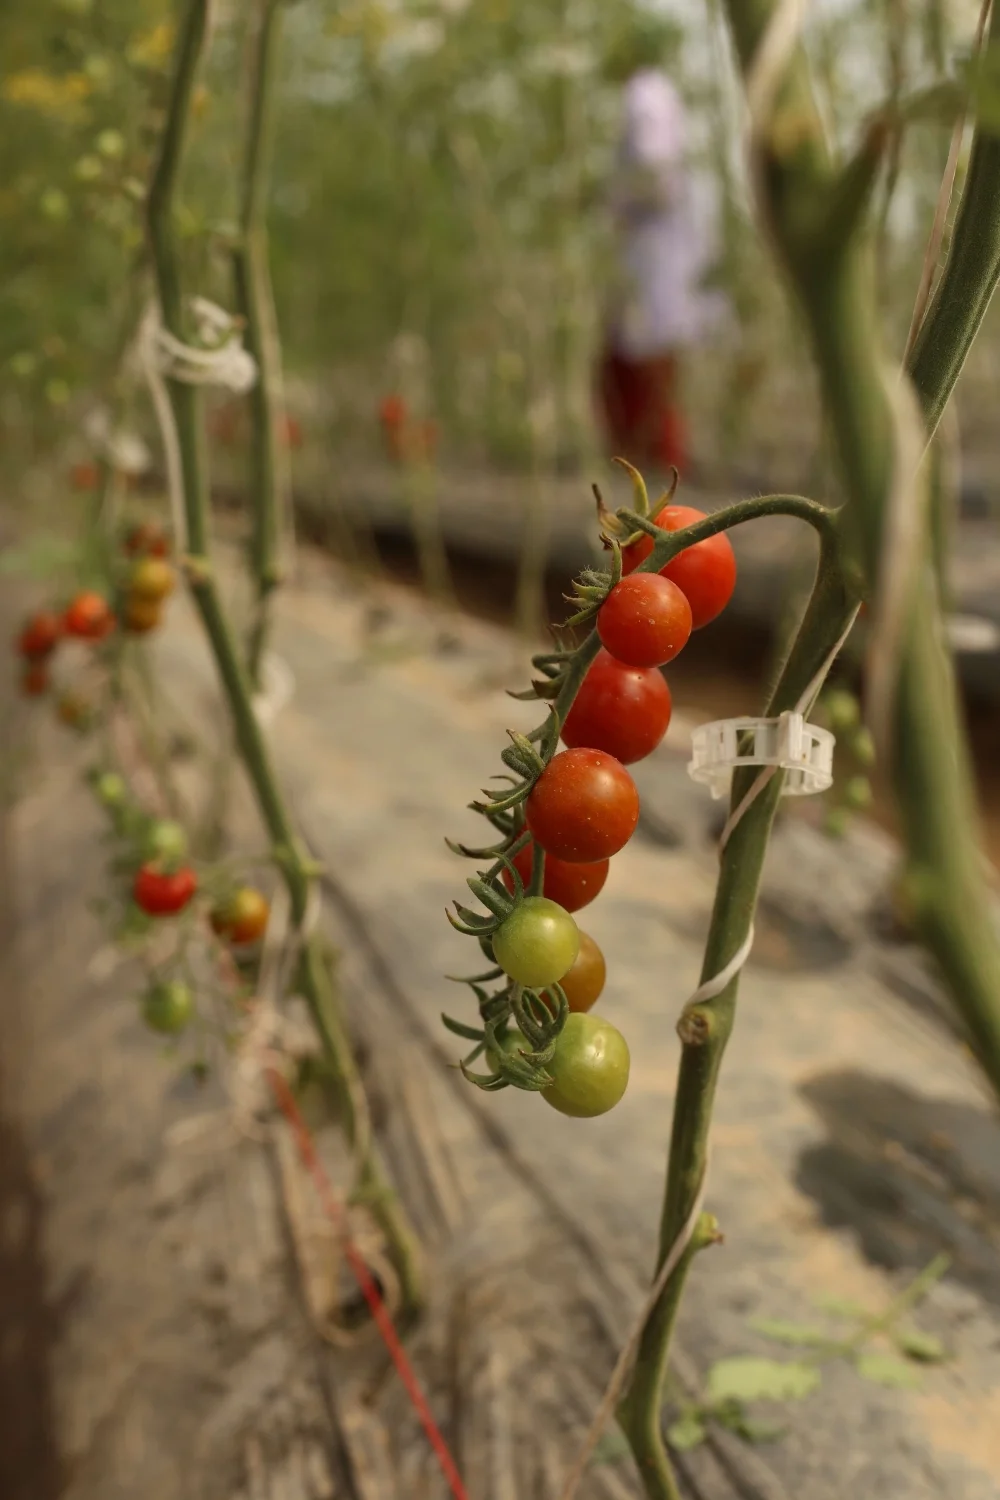 Hanging cherry tomatoes